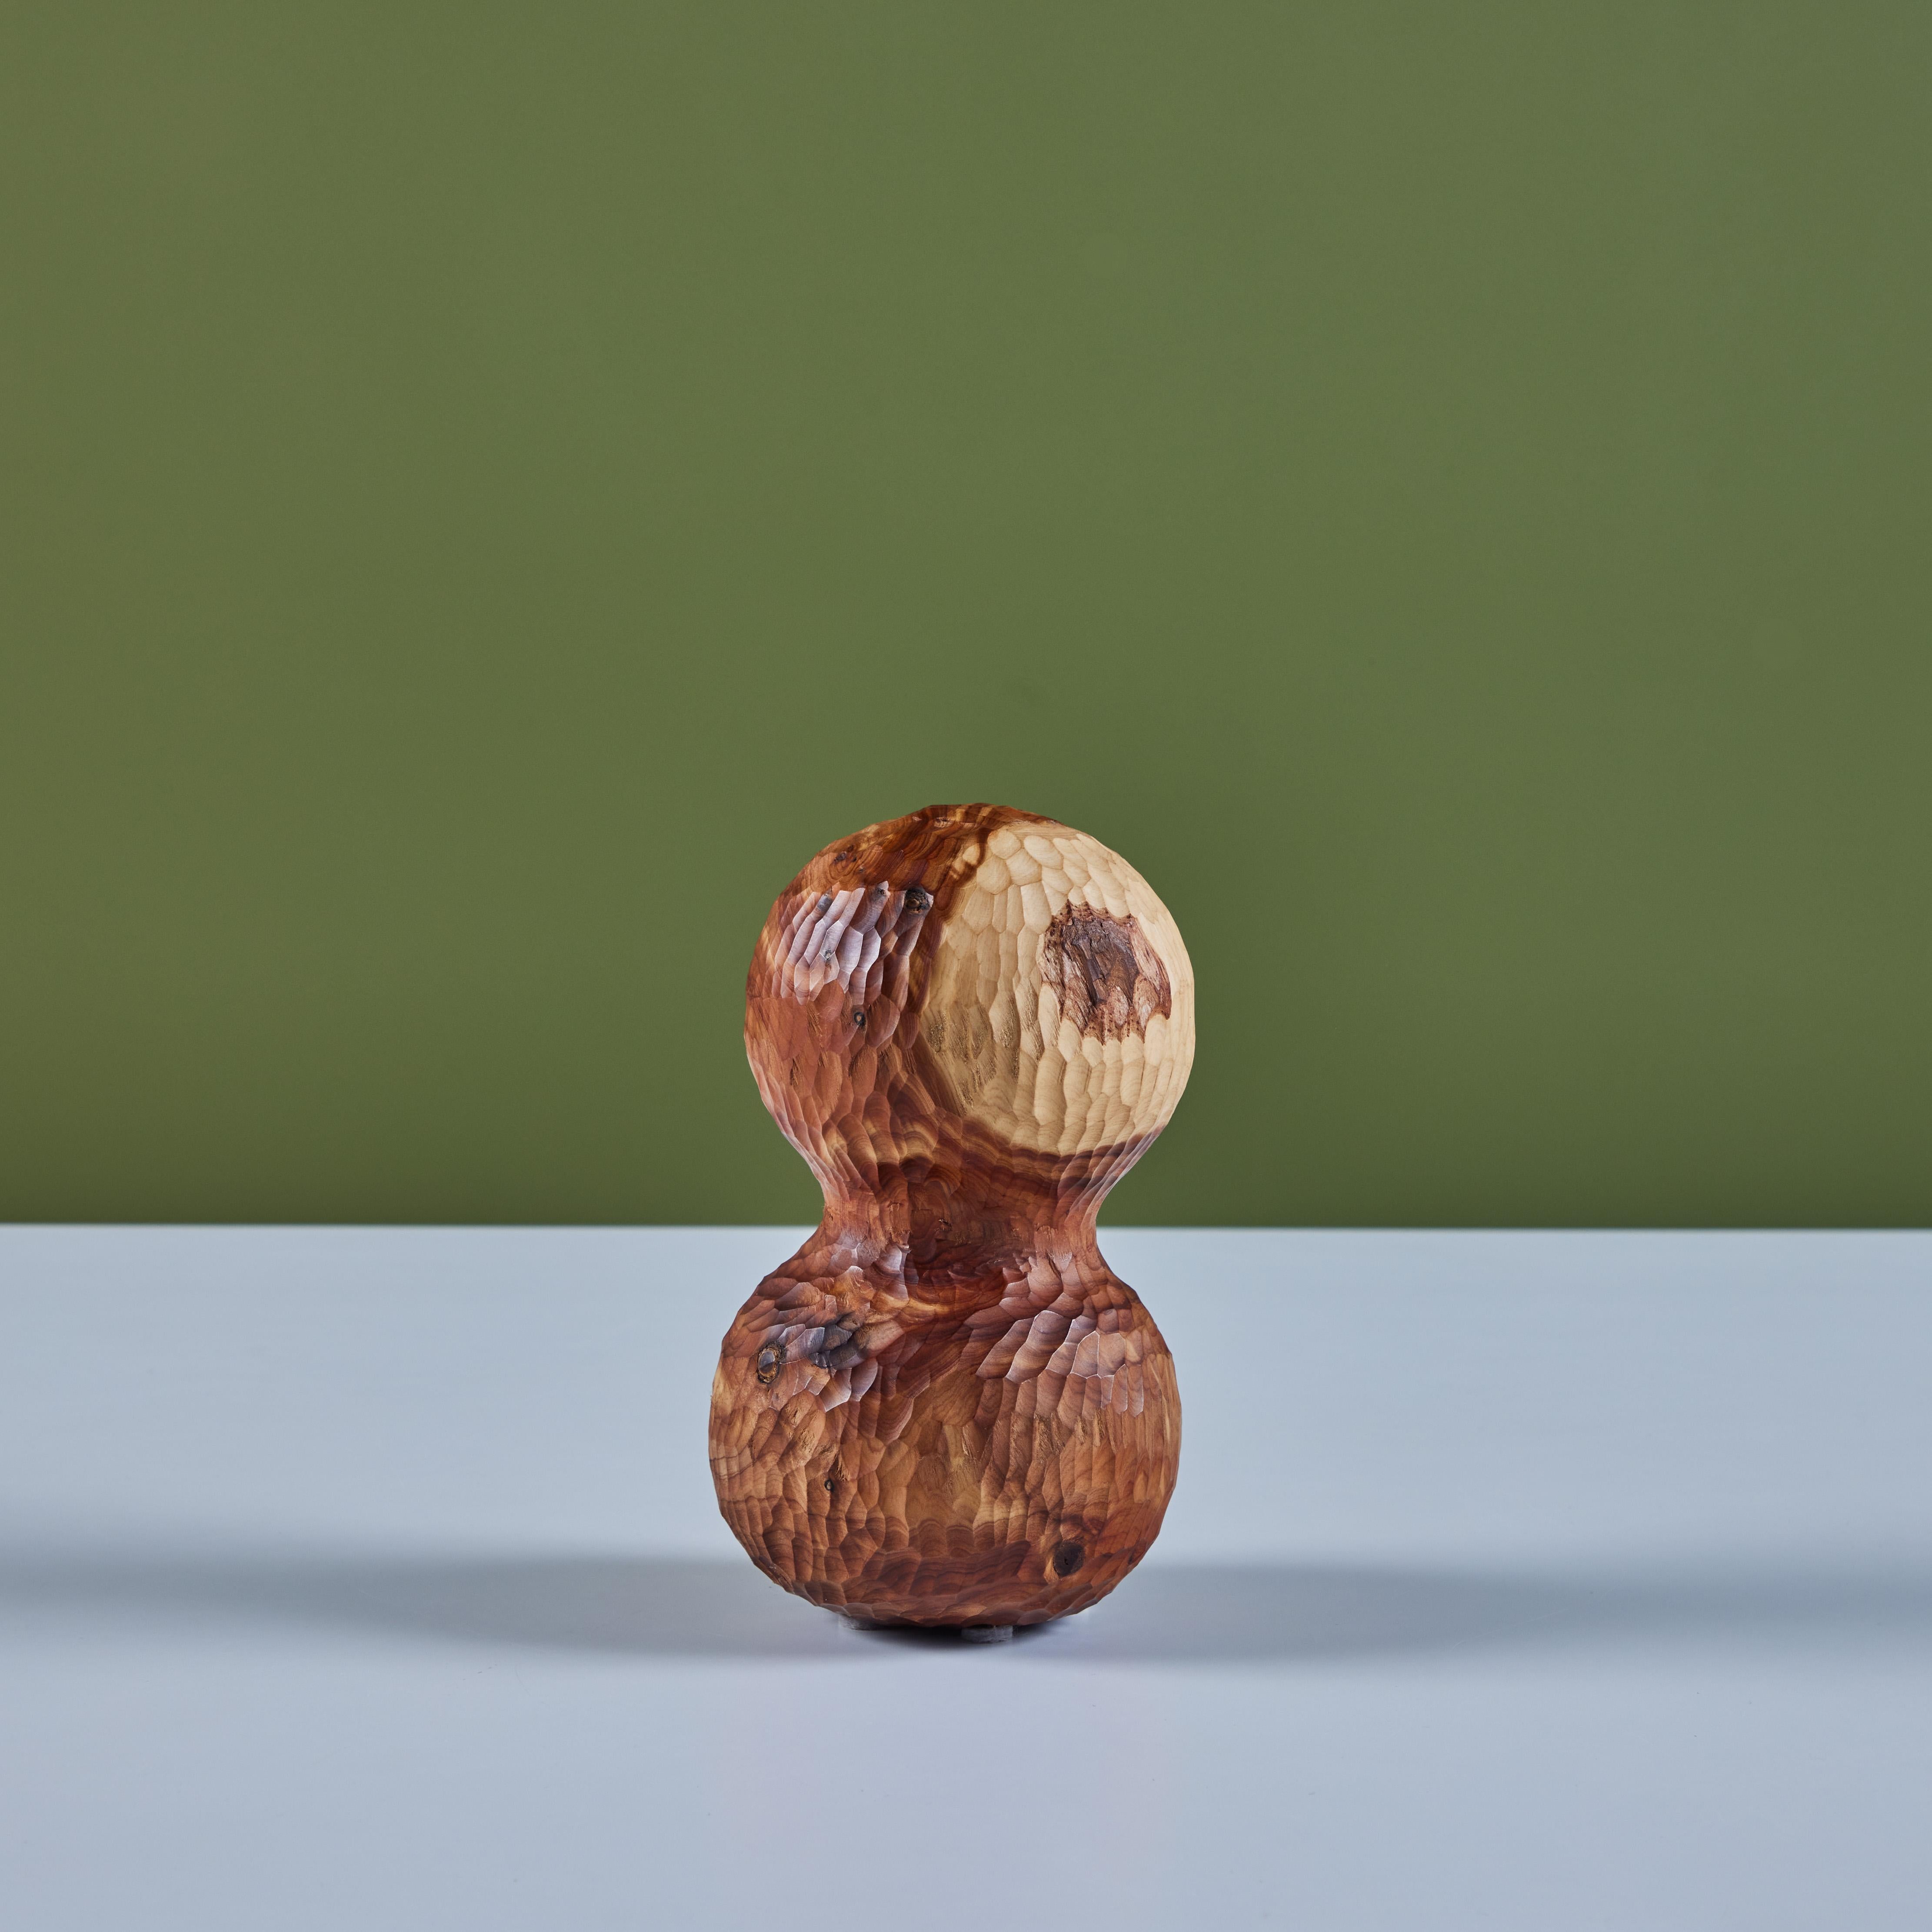 Handgeschnitzte Wacholderskulptur des zeitgenössischen Designers David O'Brien von Hawk & Stone aus Los Angeles. Davids Wertschätzung für Natur und Holz hat tiefe Wurzeln in Neuengland. Diese Skulptur zeigt zwei gestapelte Kugeln mit strukturierten